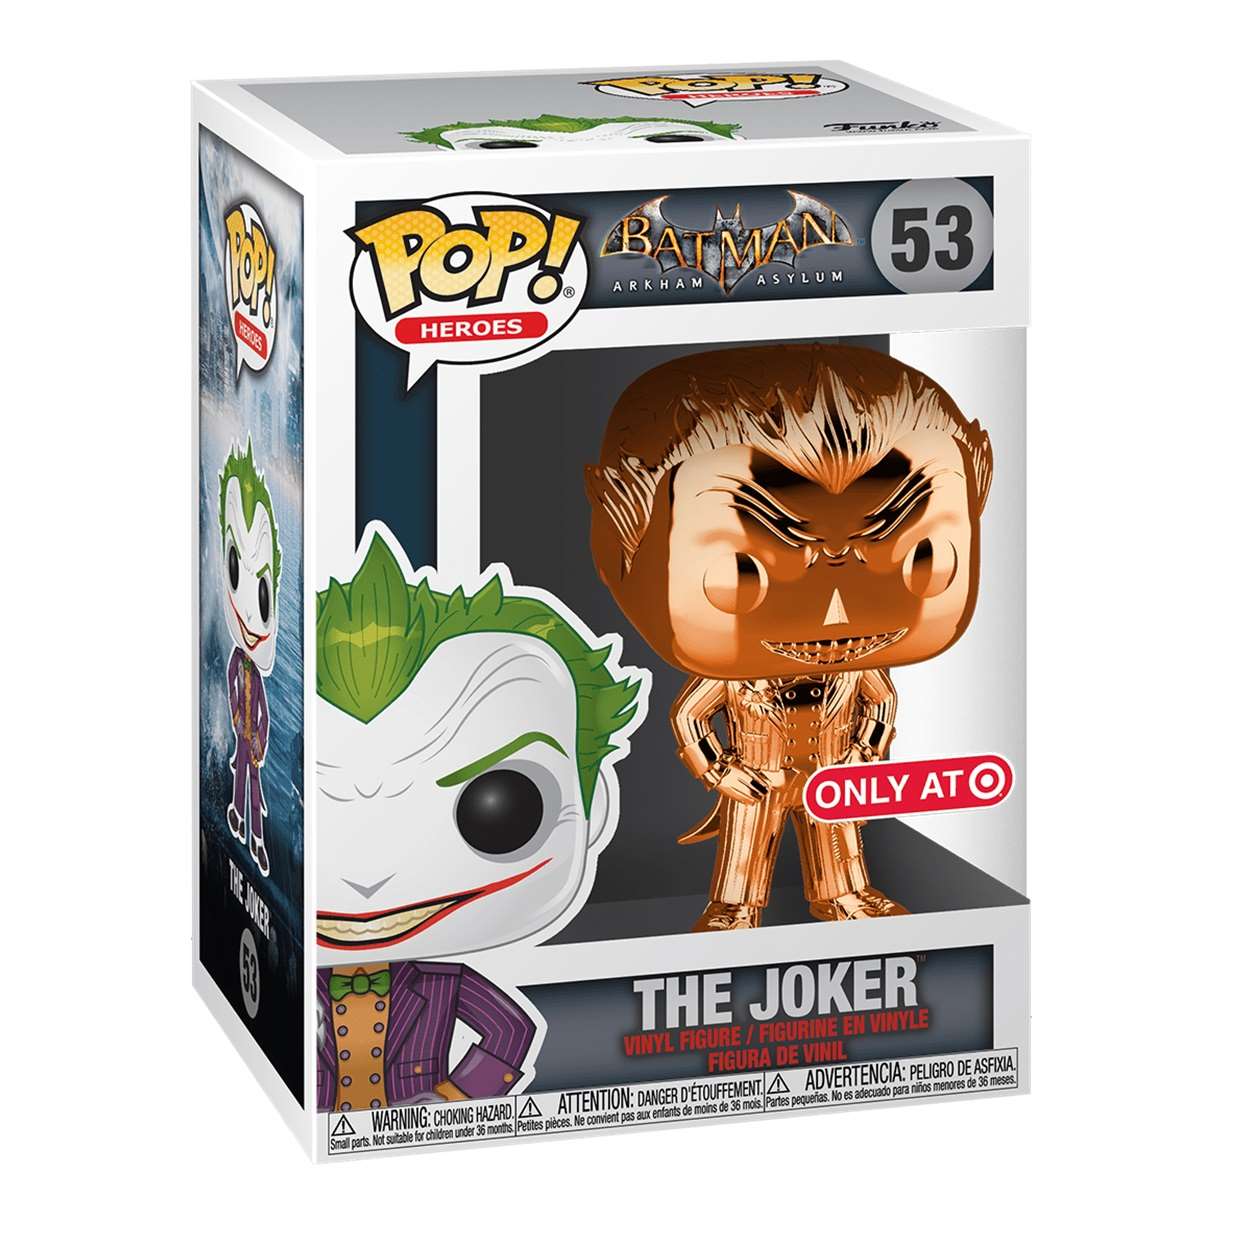 The Joker Orange #53 Batman Arkham Asylum Funko Pop! Exclusivo Target